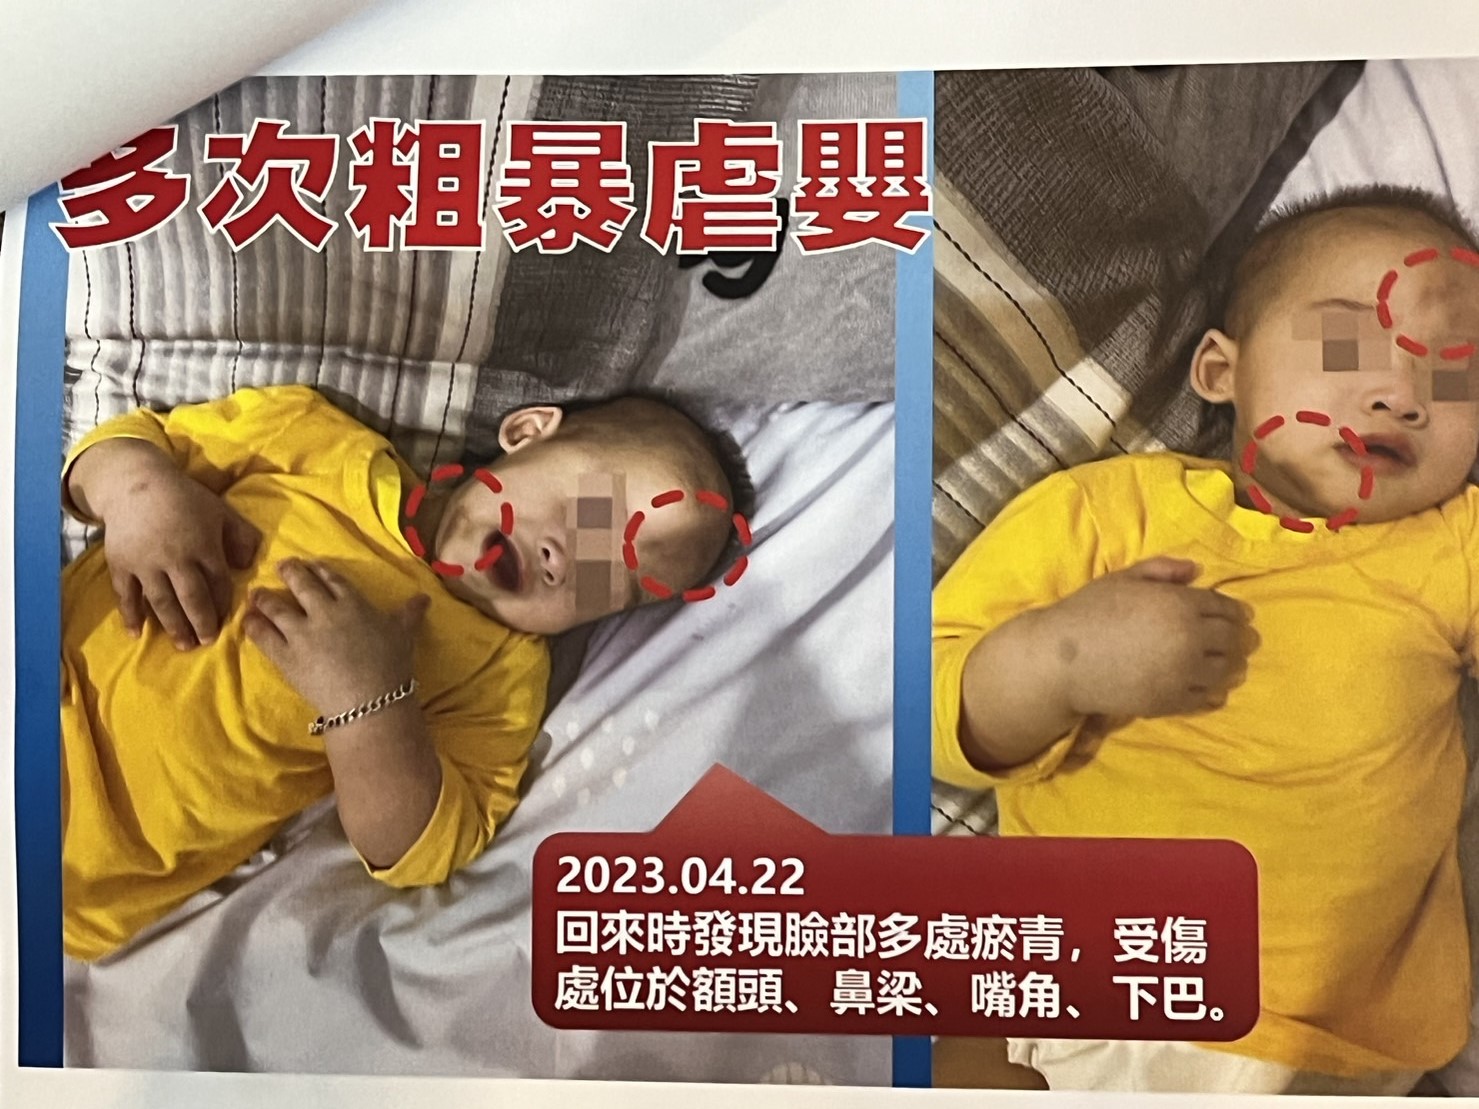 [新聞] 台南驚傳虐嬰未足1歲男嬰滿臉傷 疑被毆